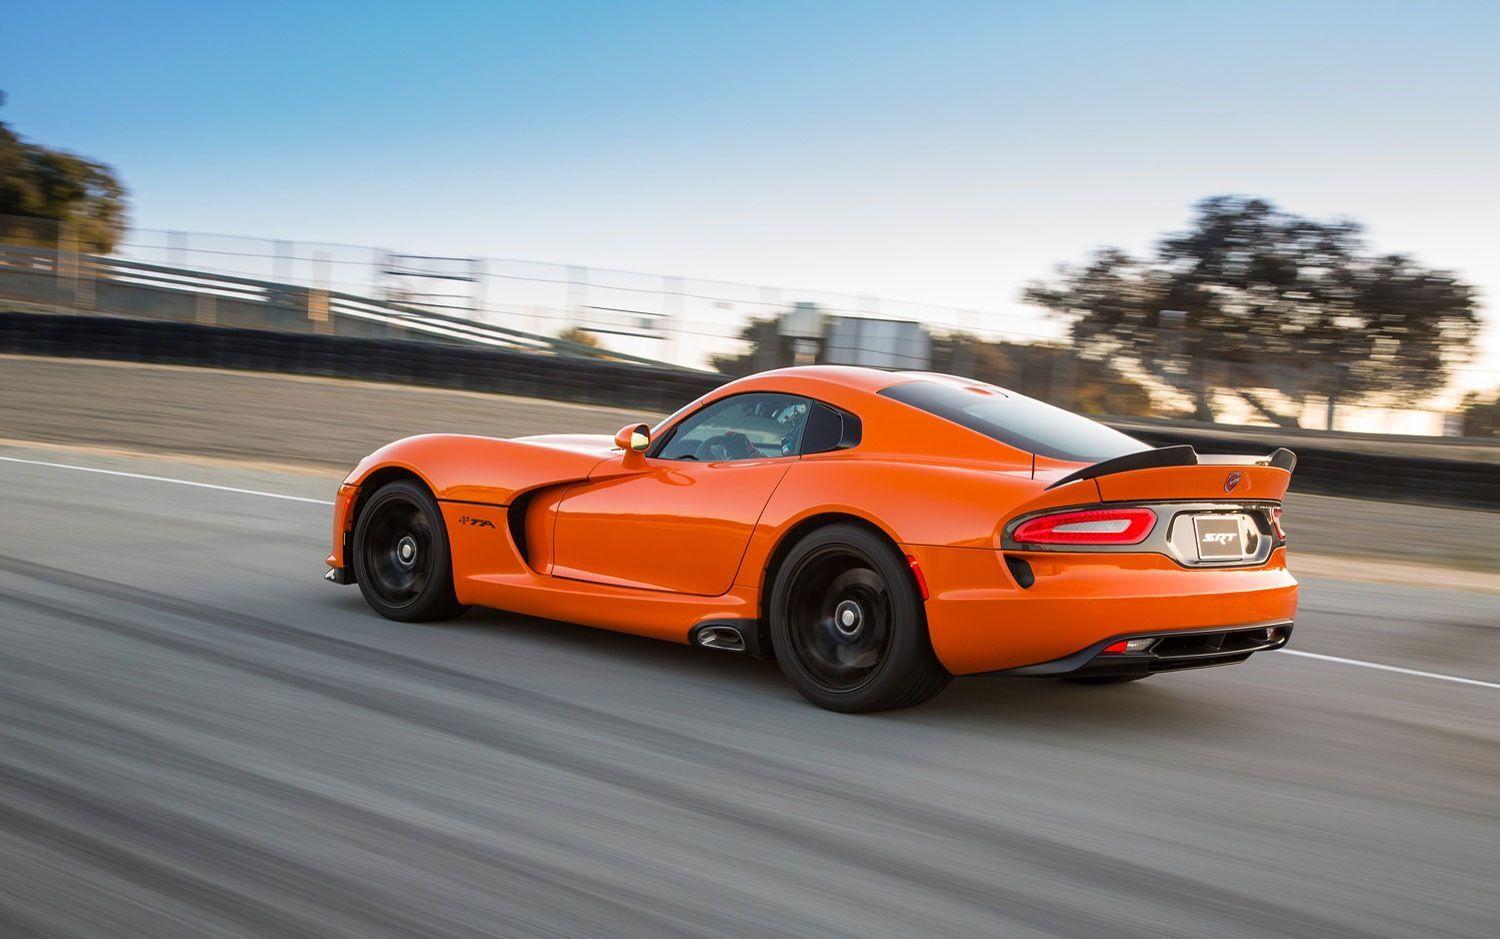 Orange Viper Logo - Orange Viper. Automobile. Viper, Cars, Cool cars